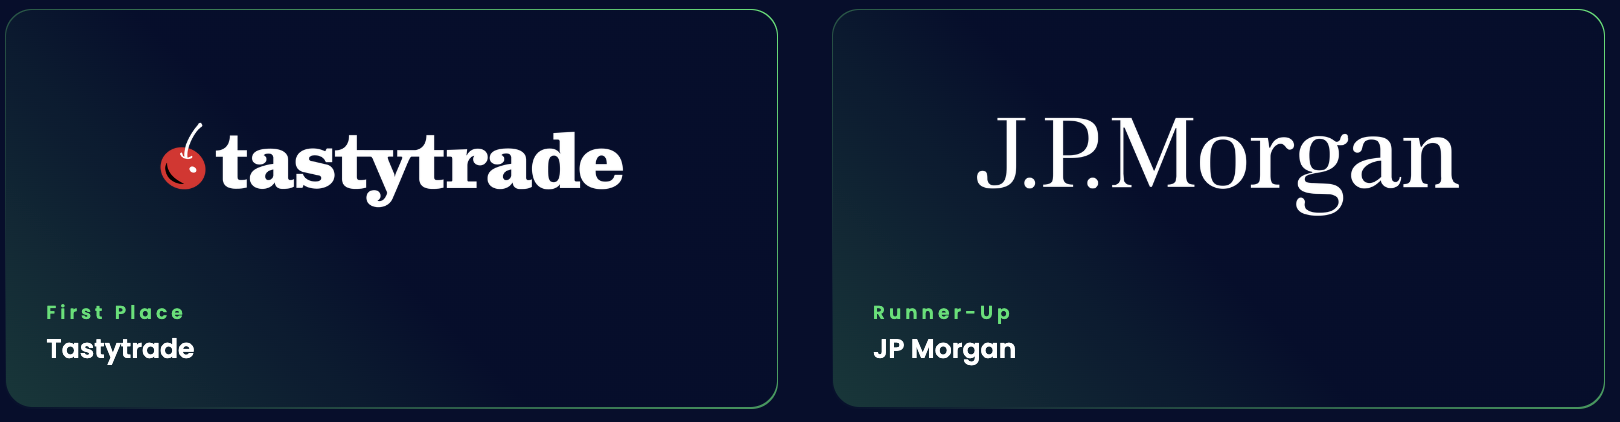 First Place: tastytrade ; Runner-Up: JP Morgan 